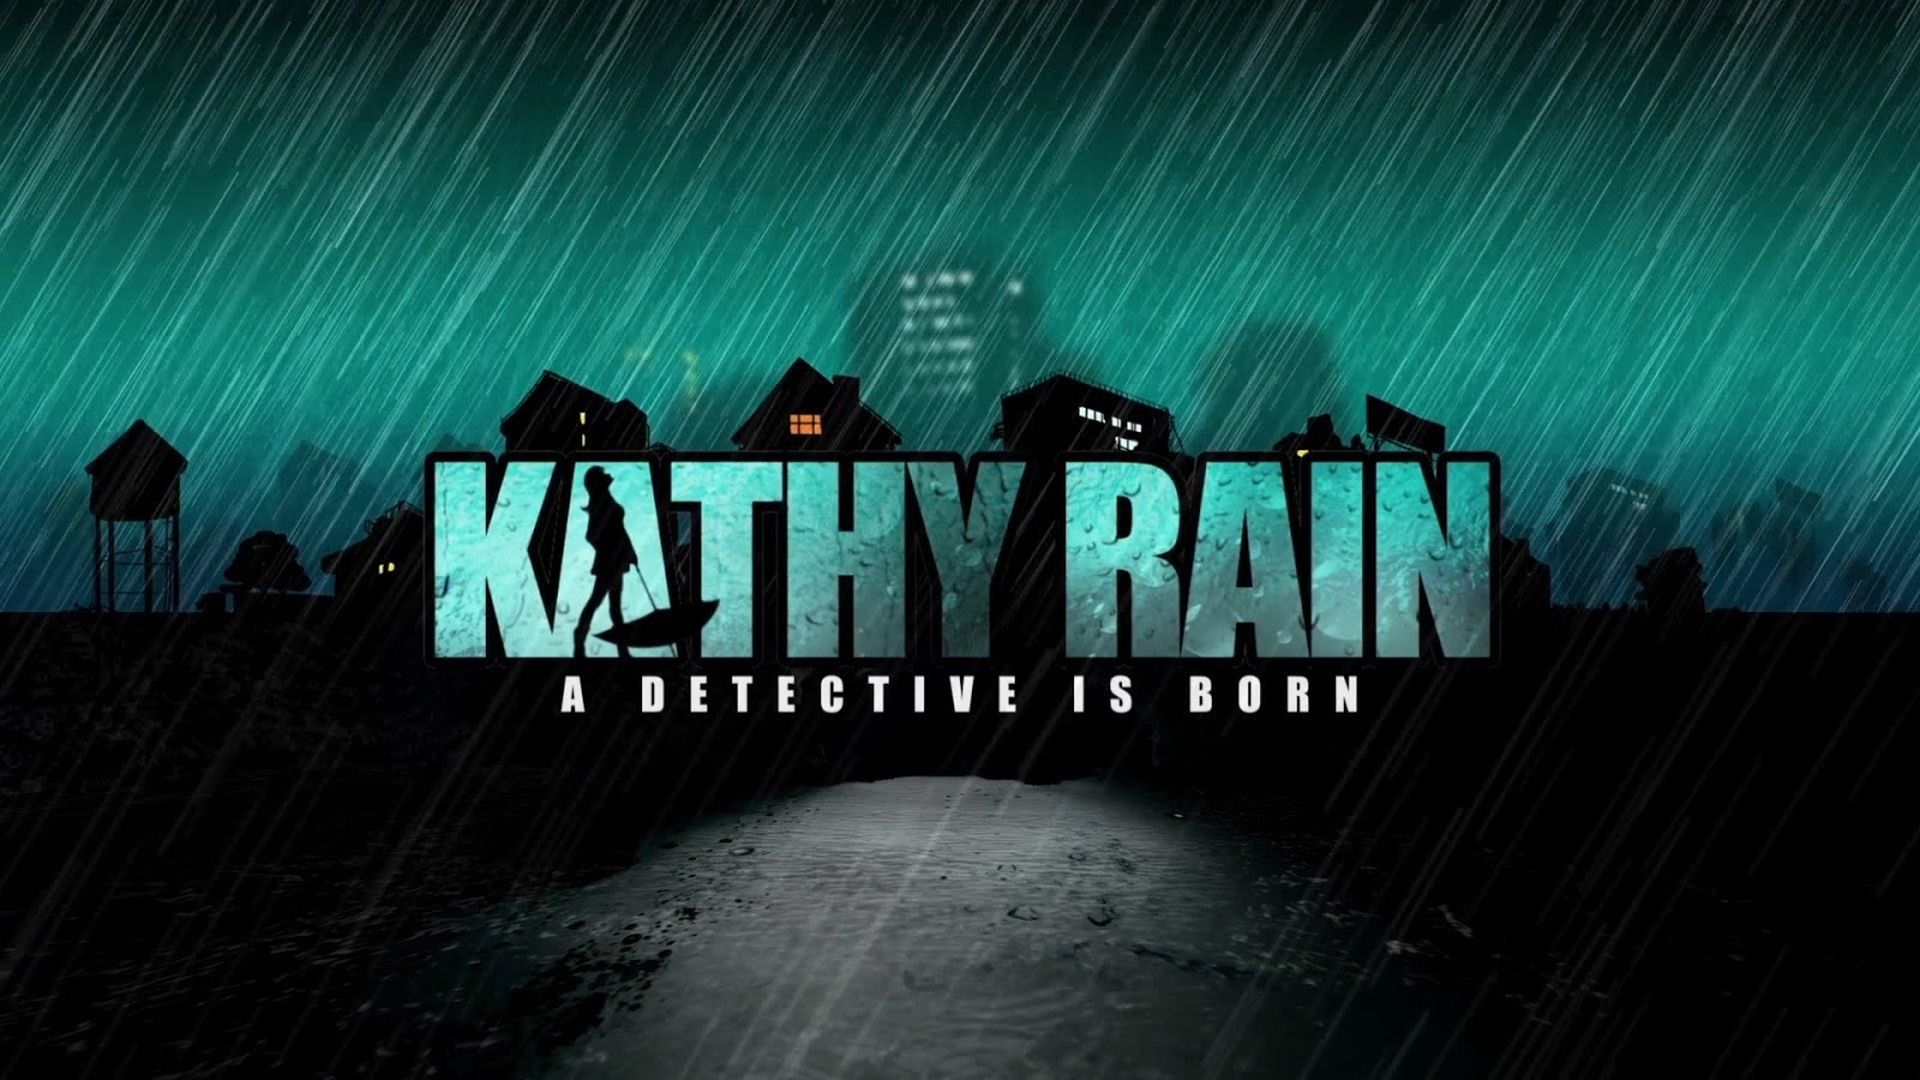 download free kathy rain game